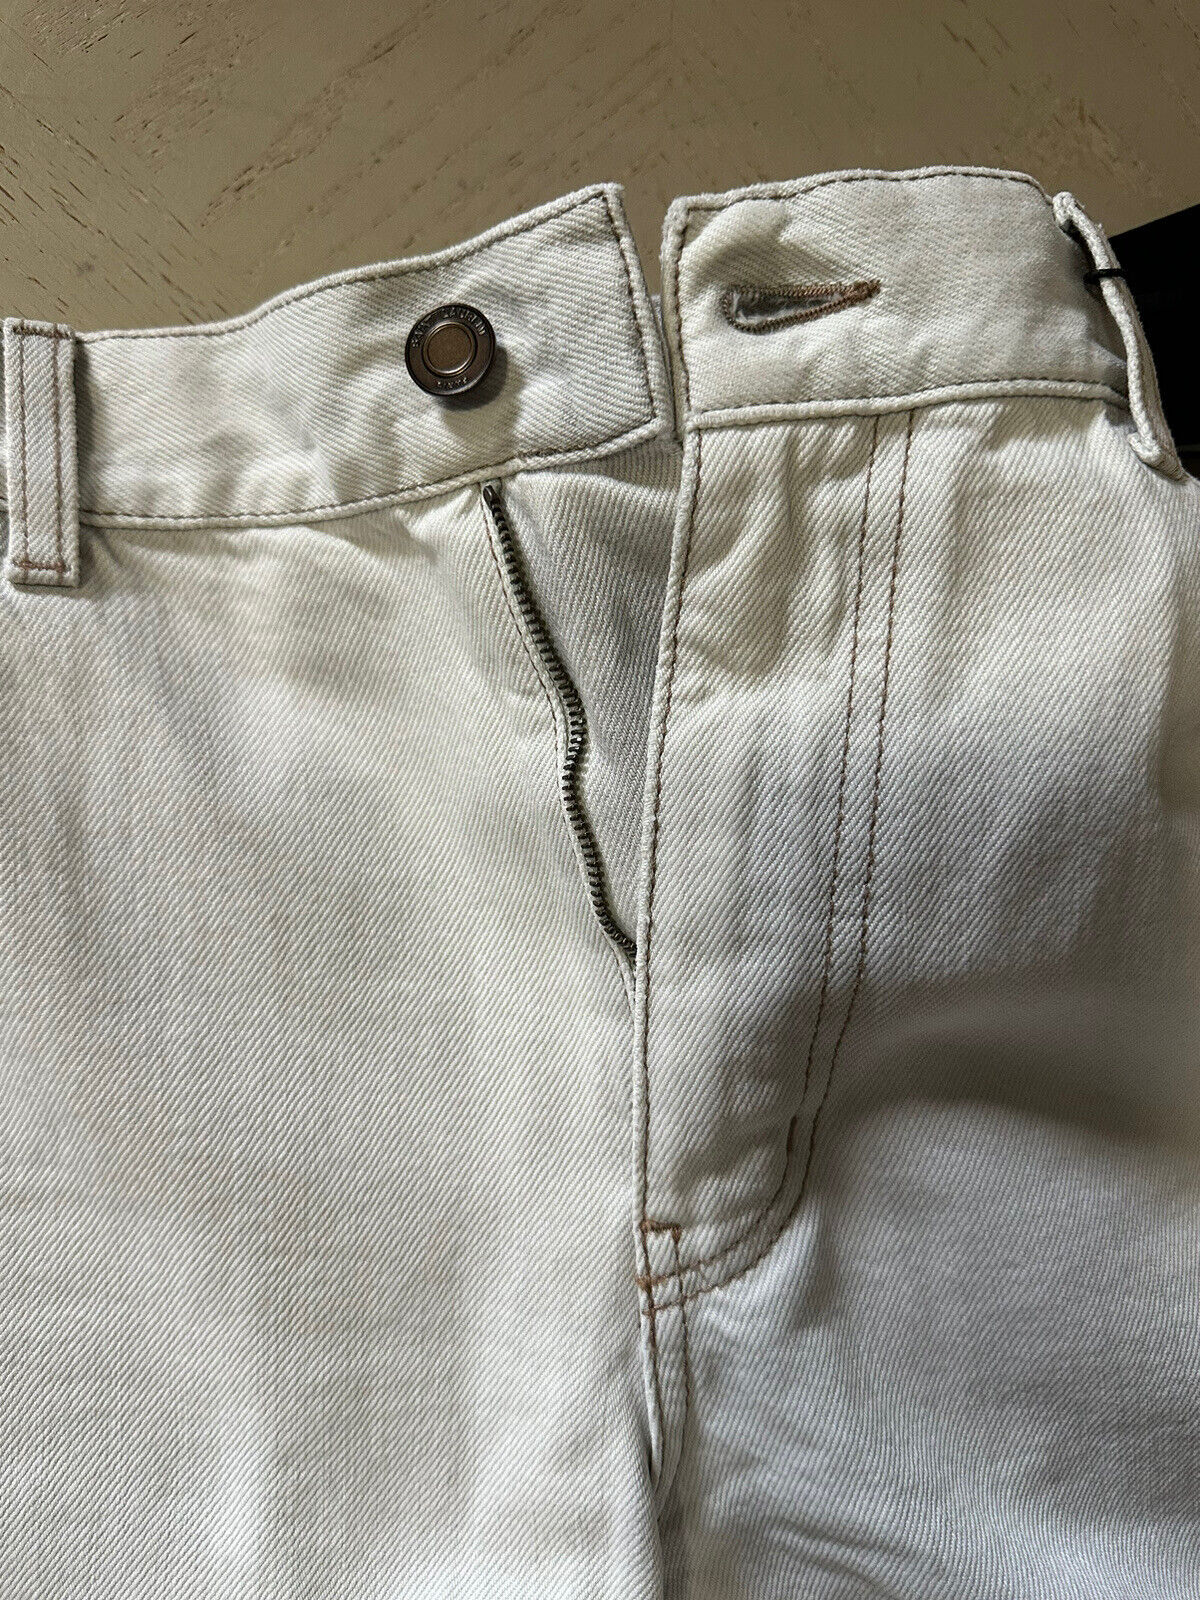 NWT $850 Мужские джинсы Saint Laurent Брюки-морковки Серые с белым 32 США Италия